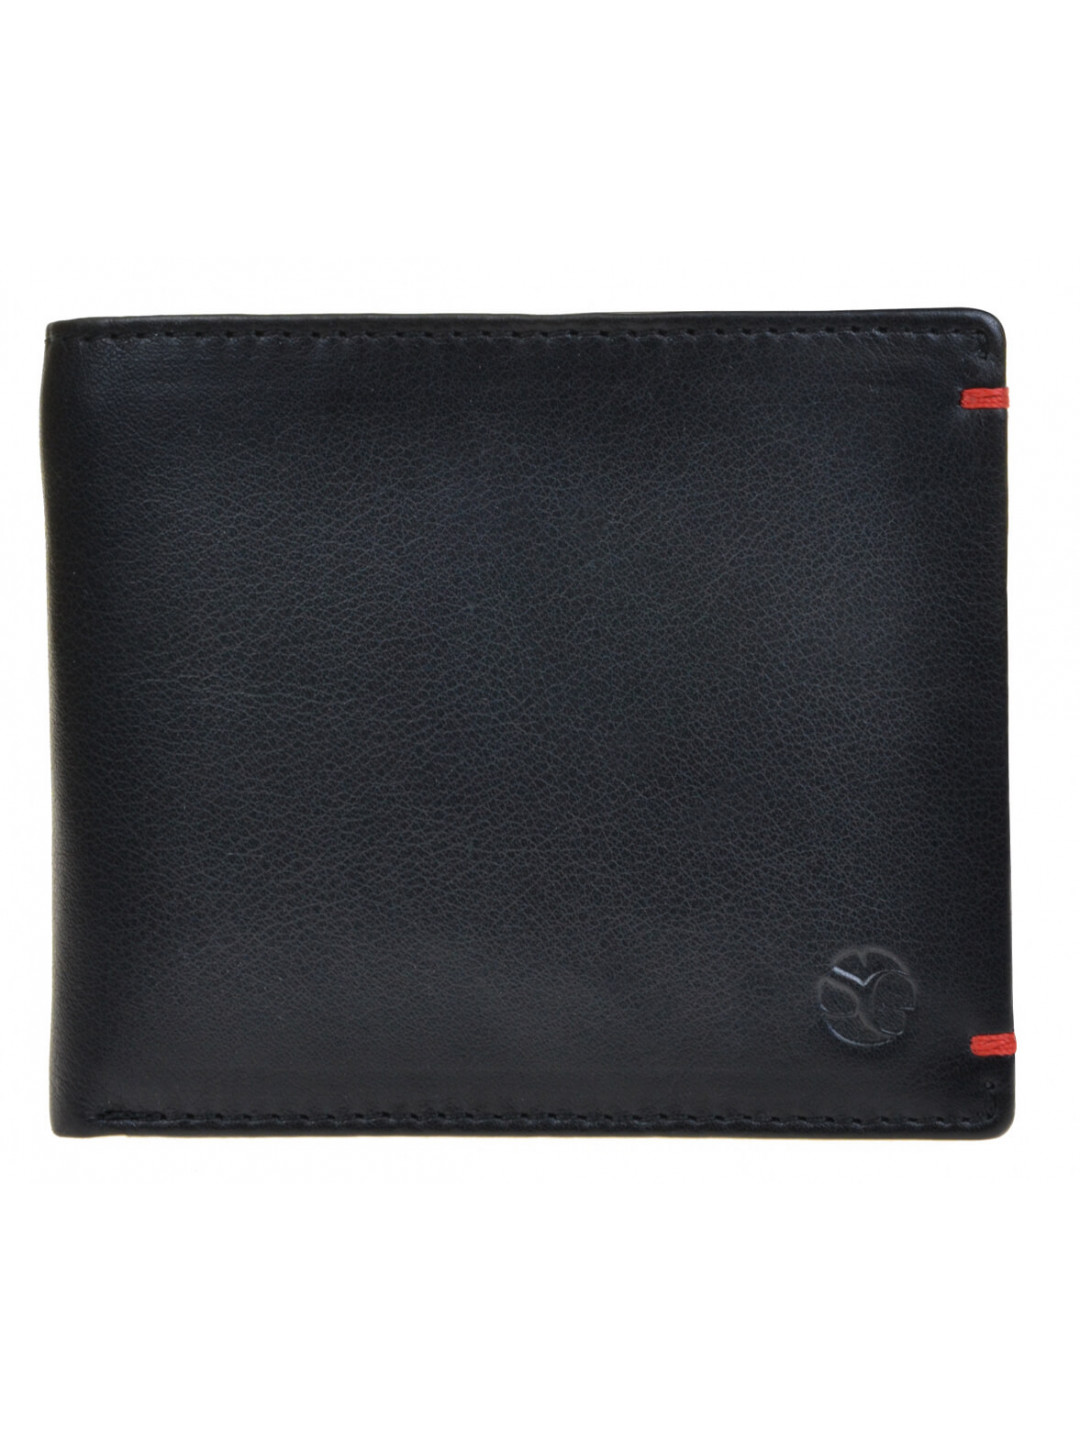 SEGALI Pánská kožená peněženka 7108 black